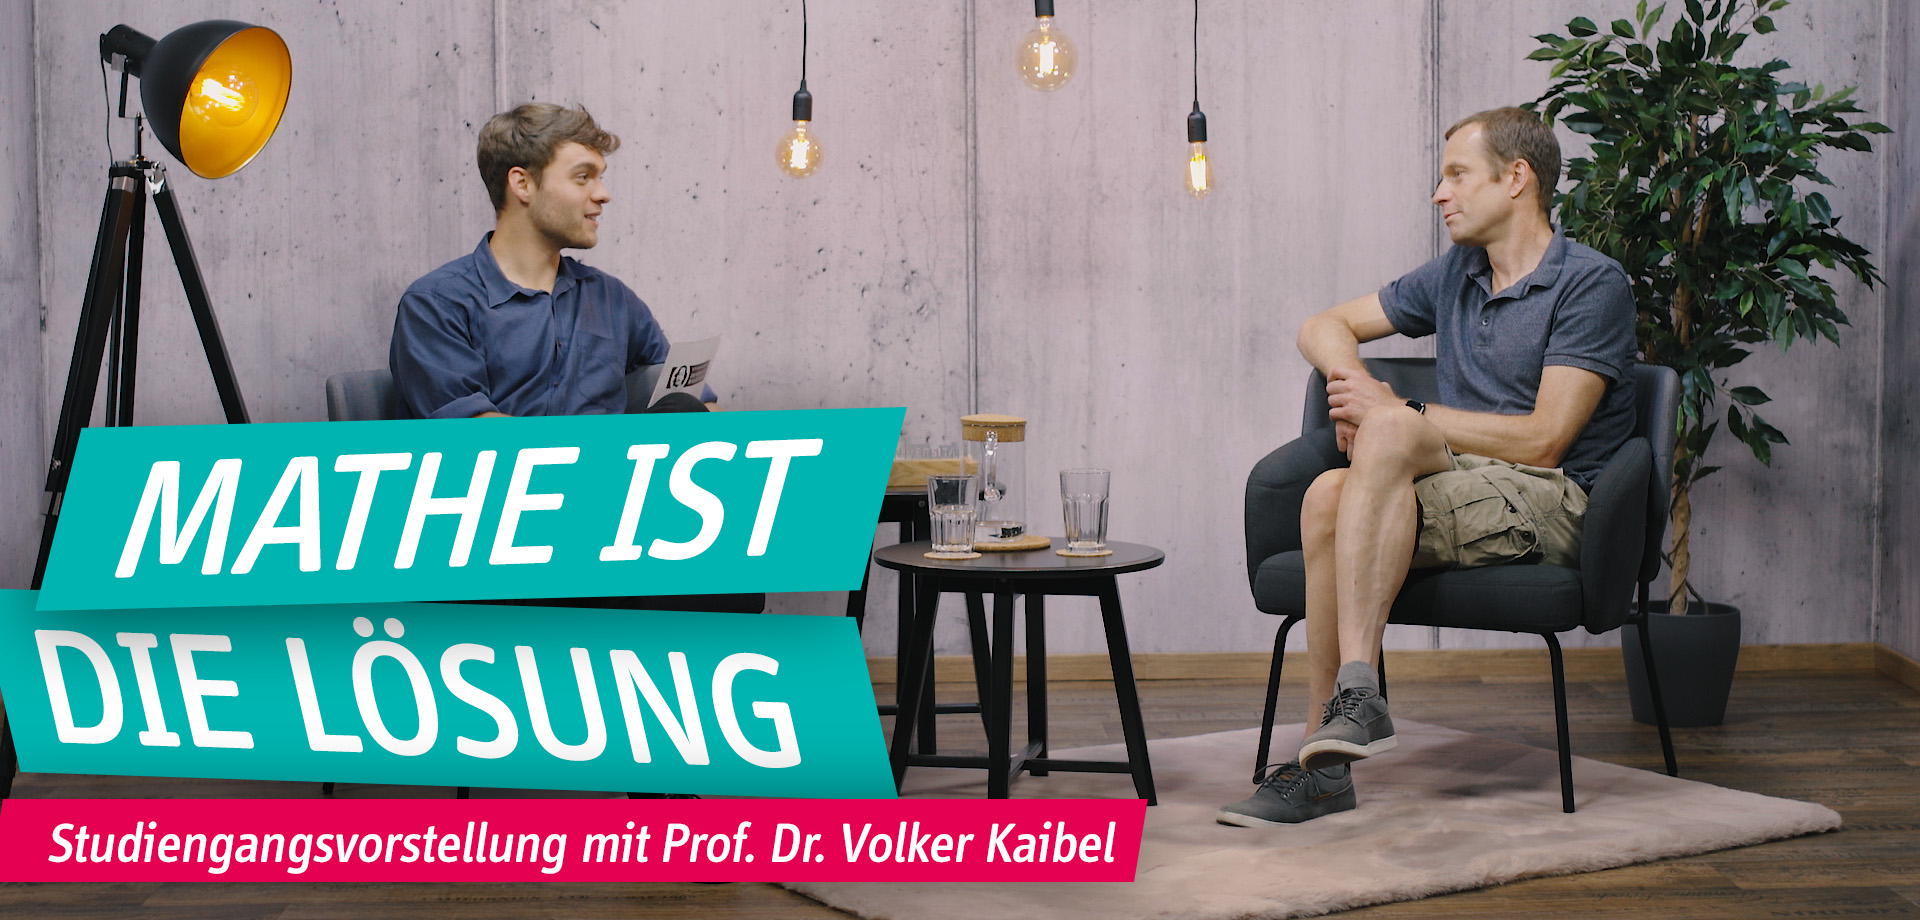 标题-视频研究gangsvorstellung mit教授Volker Kaibel博士